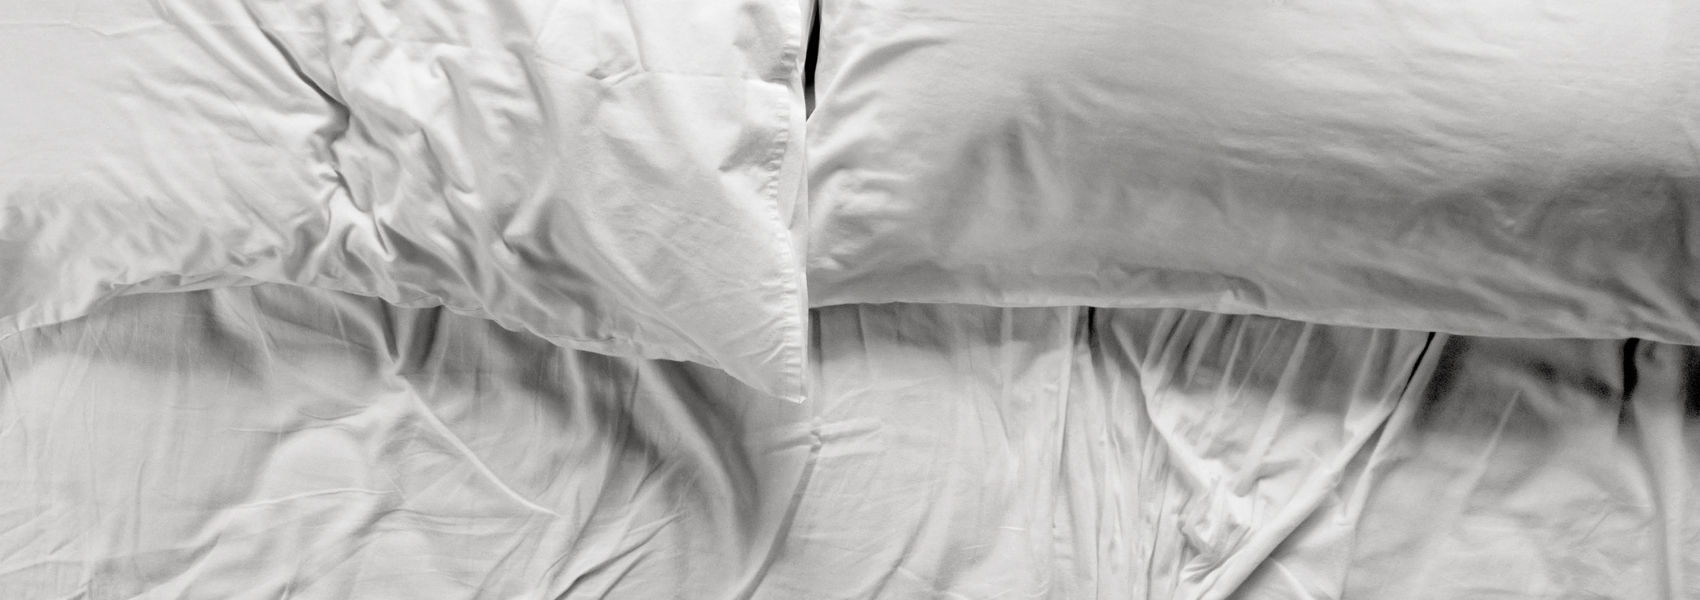 mitos associados ao sono que devem ser esclarecidos